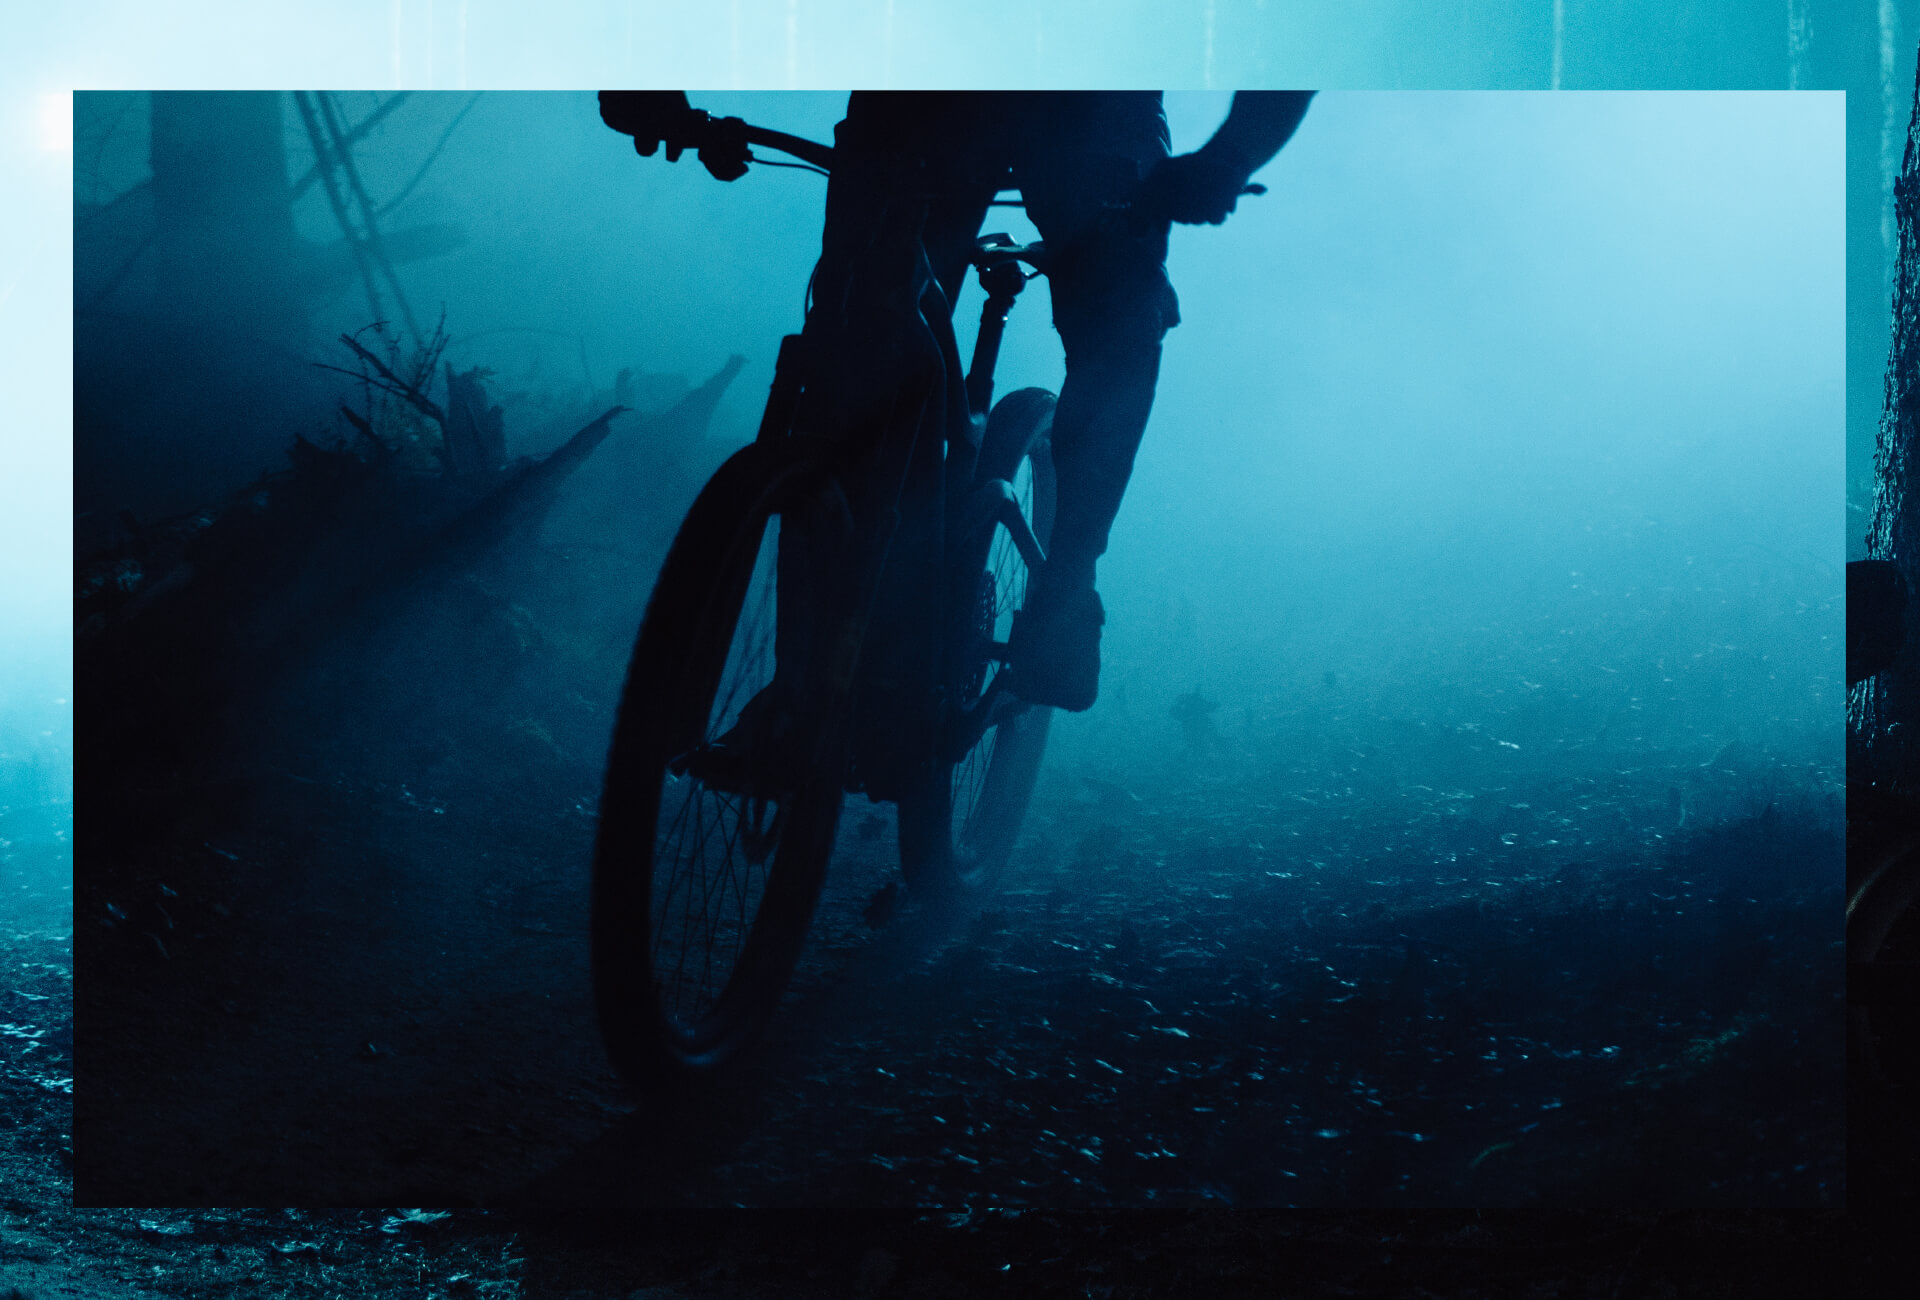 Qualcuno in sella a una mountain bike attraverso una foresta oscura con luci blu sullo sfondo